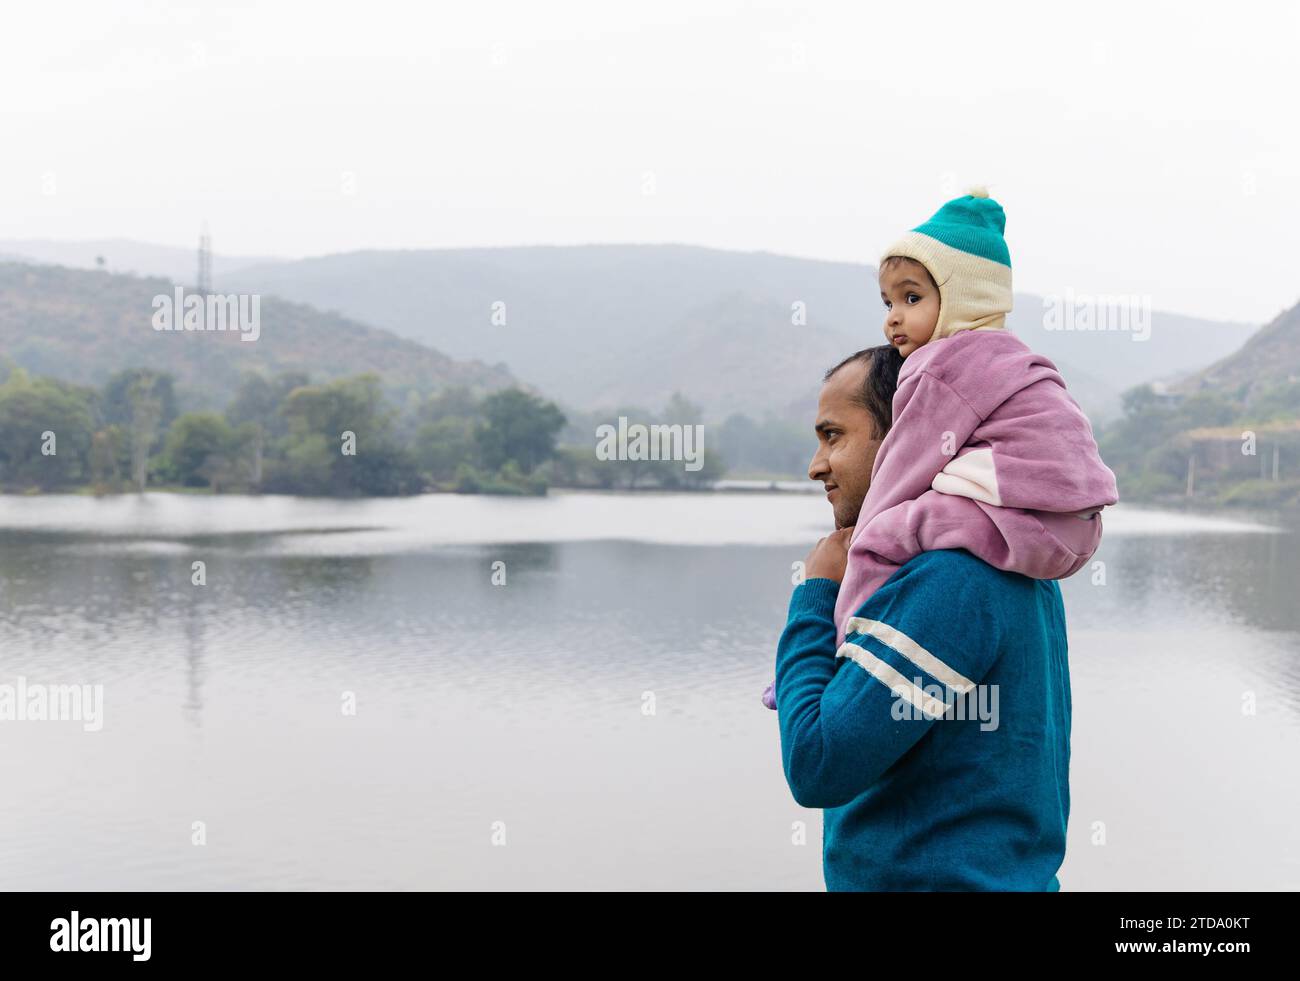 Niedlicher Kleinkind Sohn, der auf der Schulter des jungen Vaters sitzt, im Wintertuch und in der Bergsee-Landschaft am Tag Bild wird im Jagdish-Tempel udaipur rajasthan aufgenommen Stockfoto